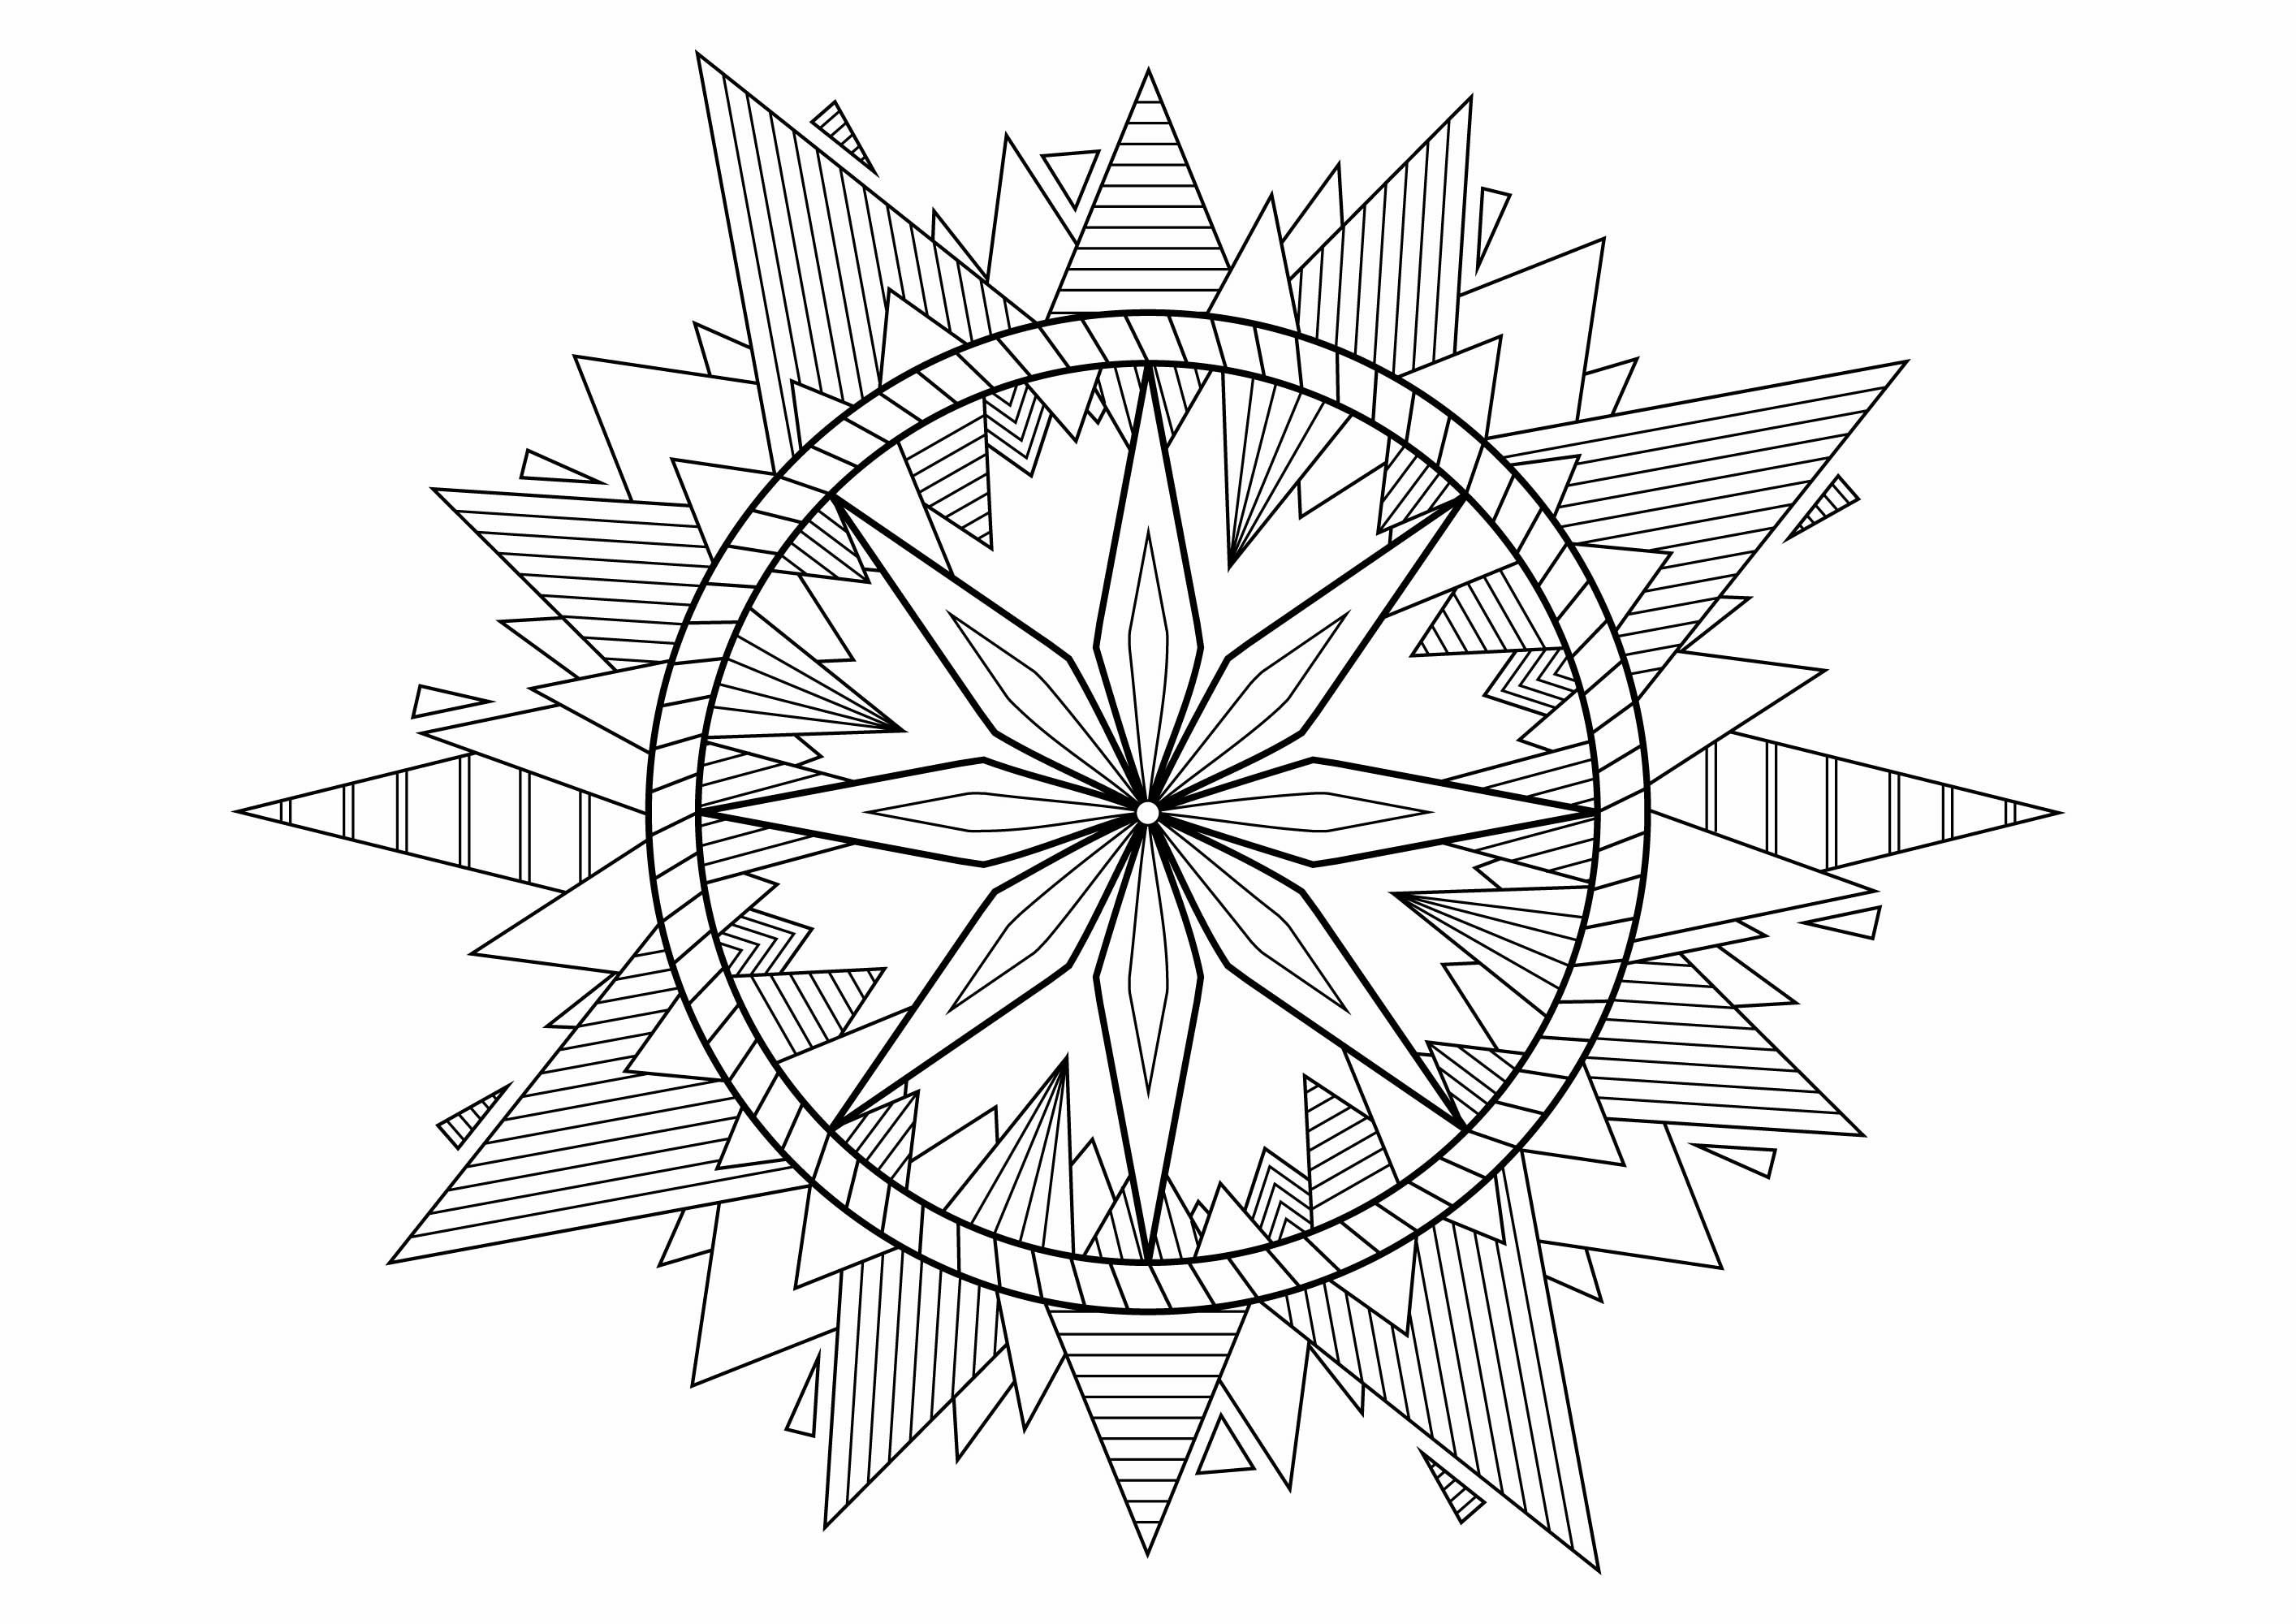 Un Mandala à colorier avec des Pyramides joliment décorées aux extrémités